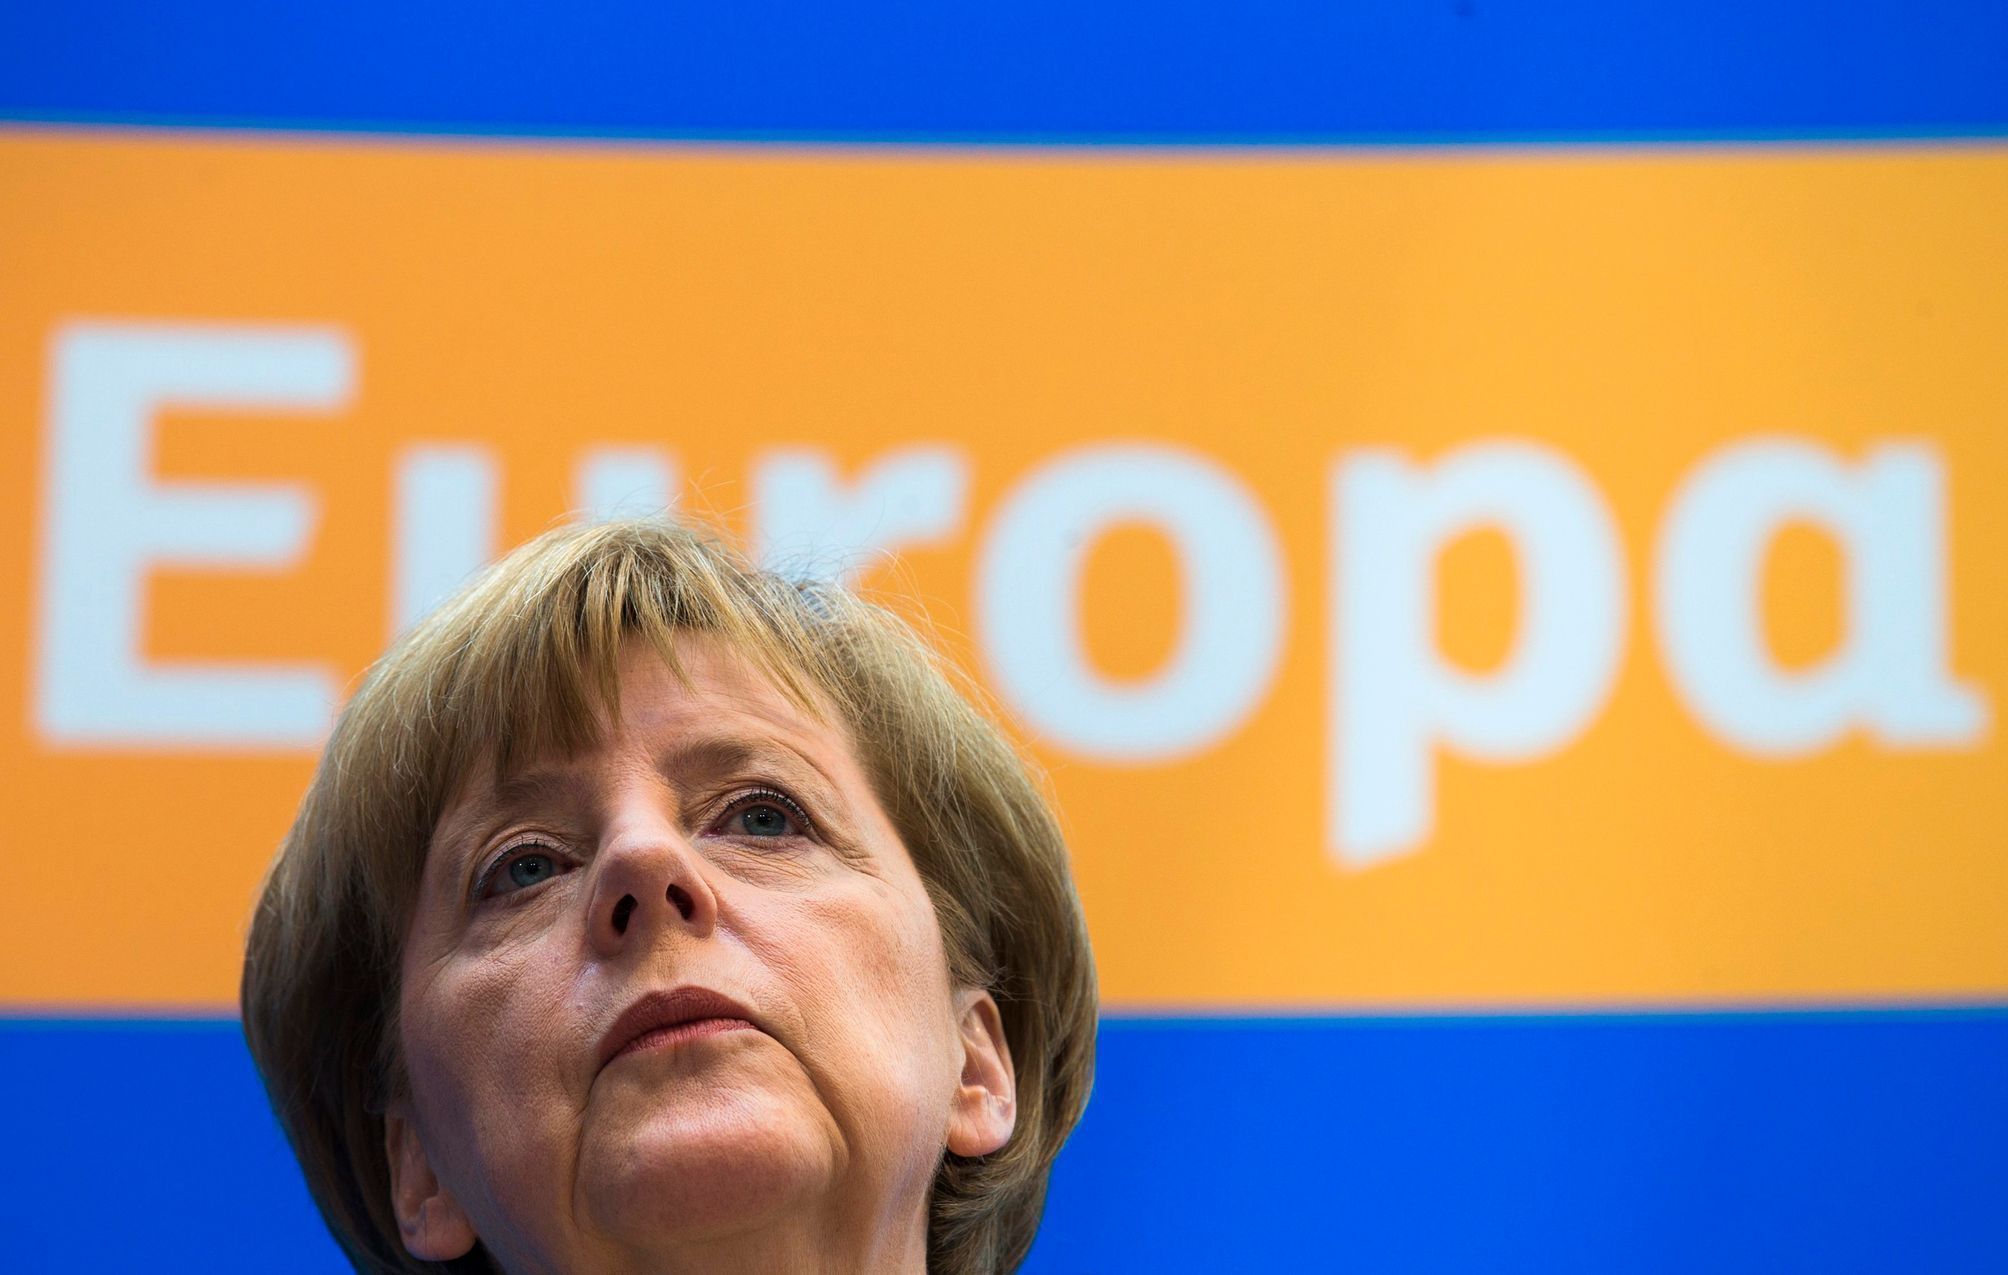 Německá kancléřka Angela Merkelová po eurovolbách v Berlíně.